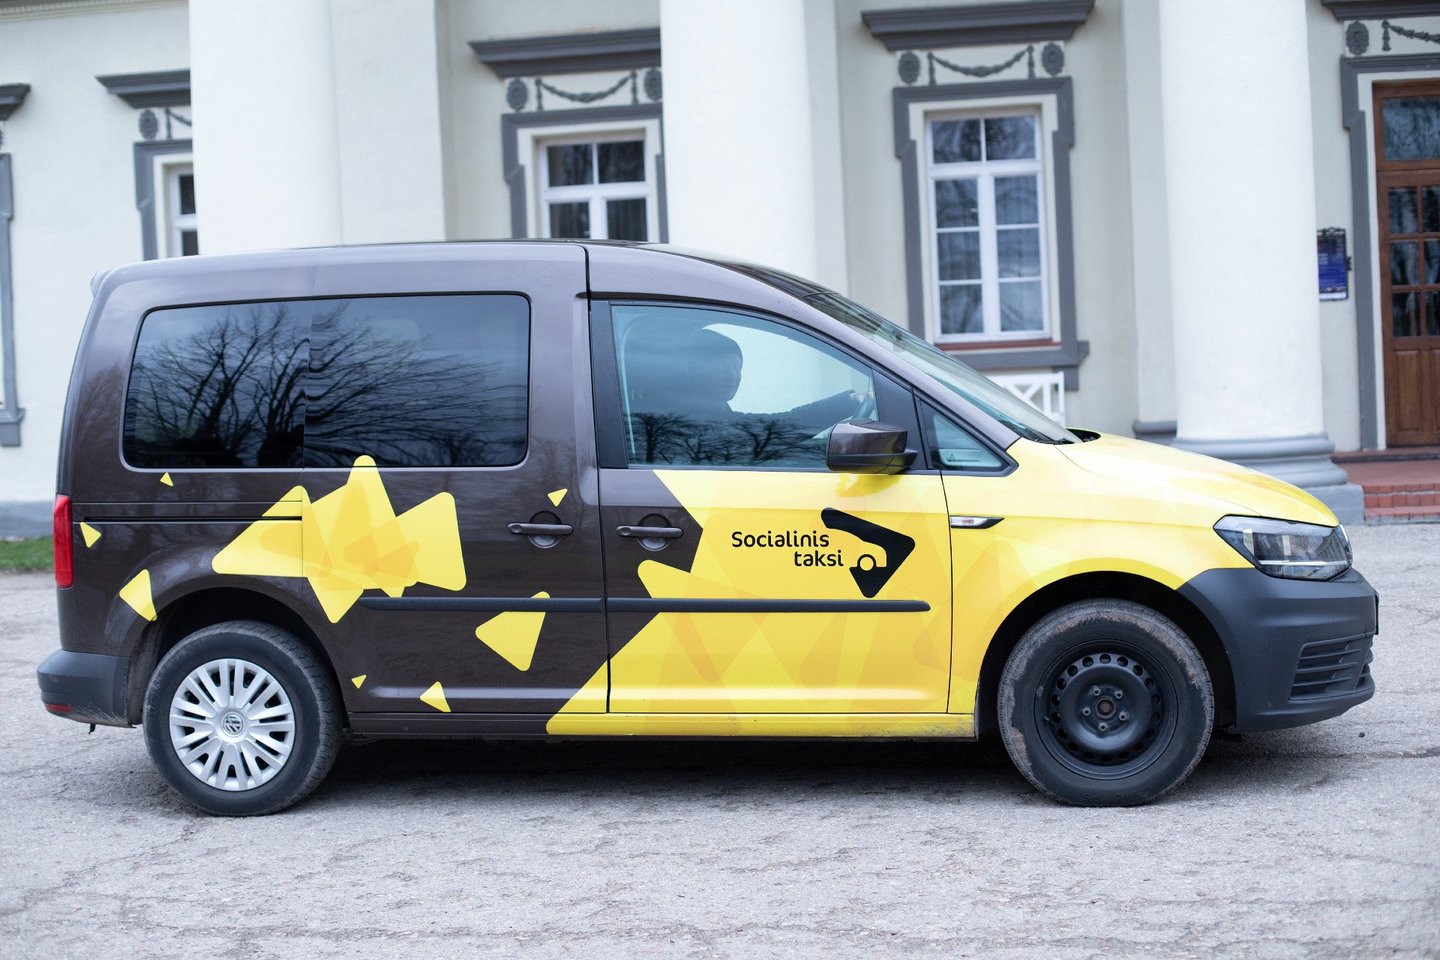  Kauno rajone pradėta teikti socialinio taksi paslauga.<br> Kauno rajono savivaldybės nuotr.